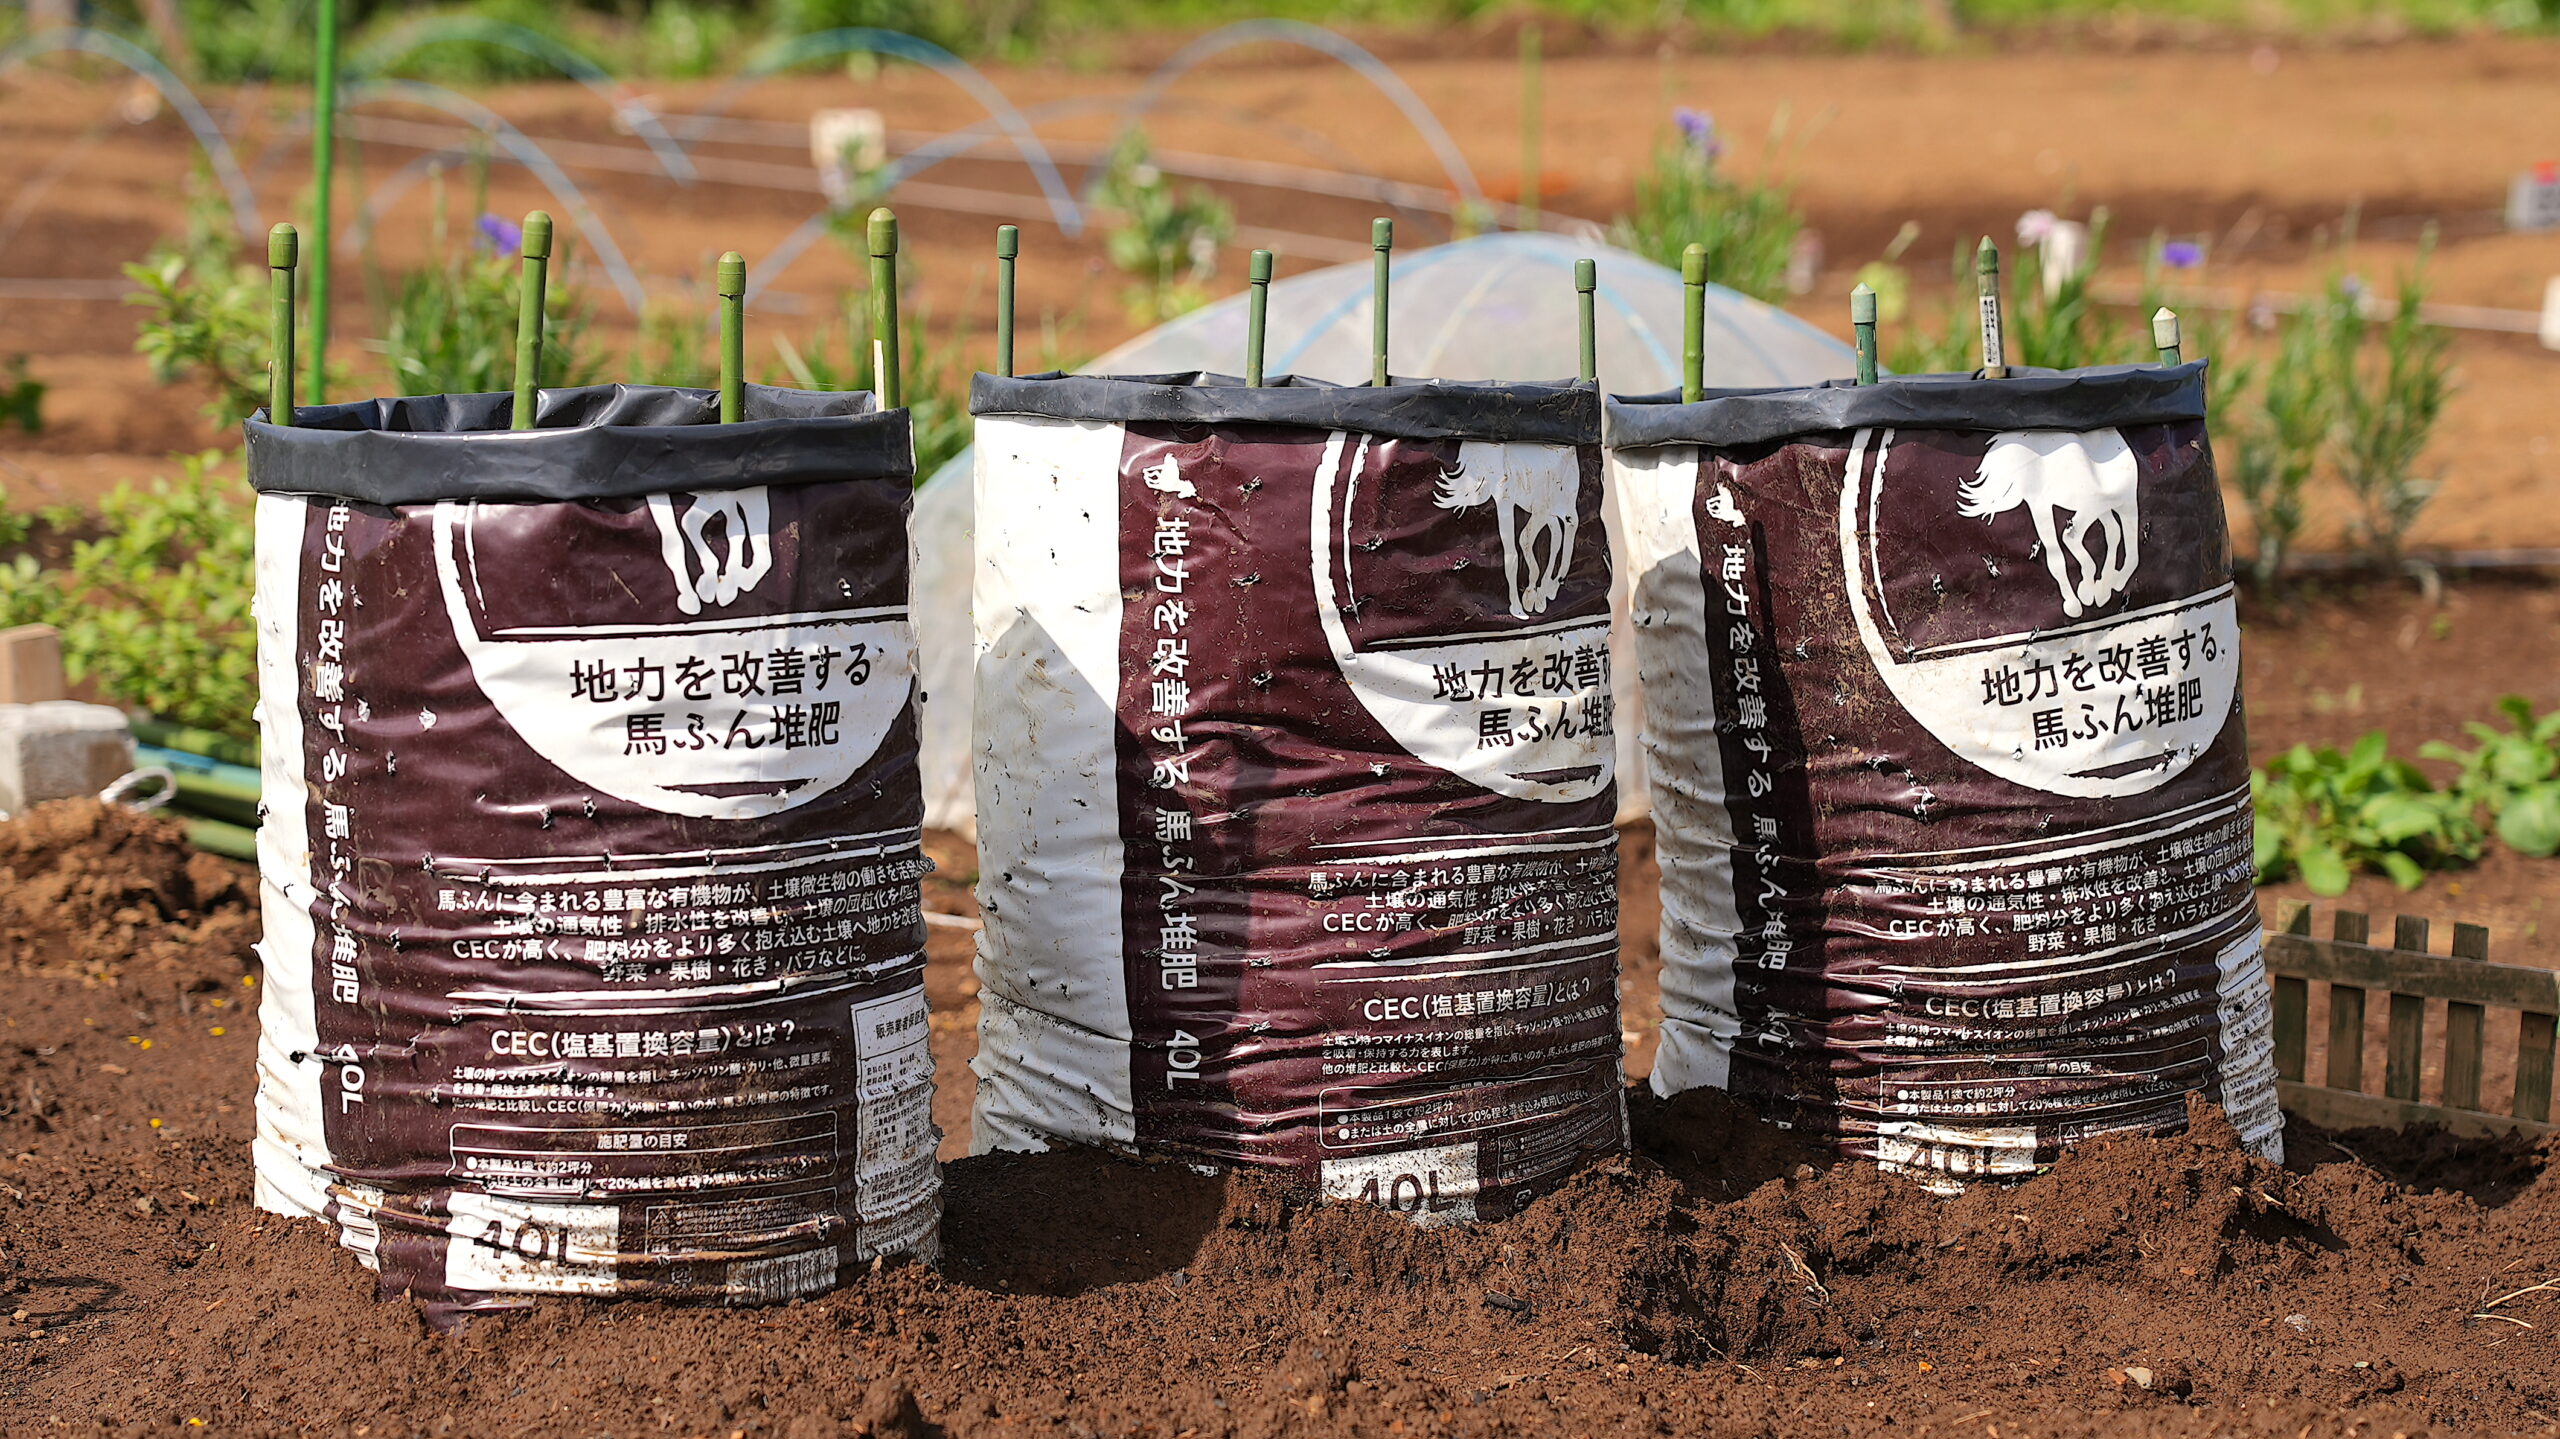 実証された ゴボウのカンタン袋栽培10のポイントと病害虫対策 デジ野菜 Digi1